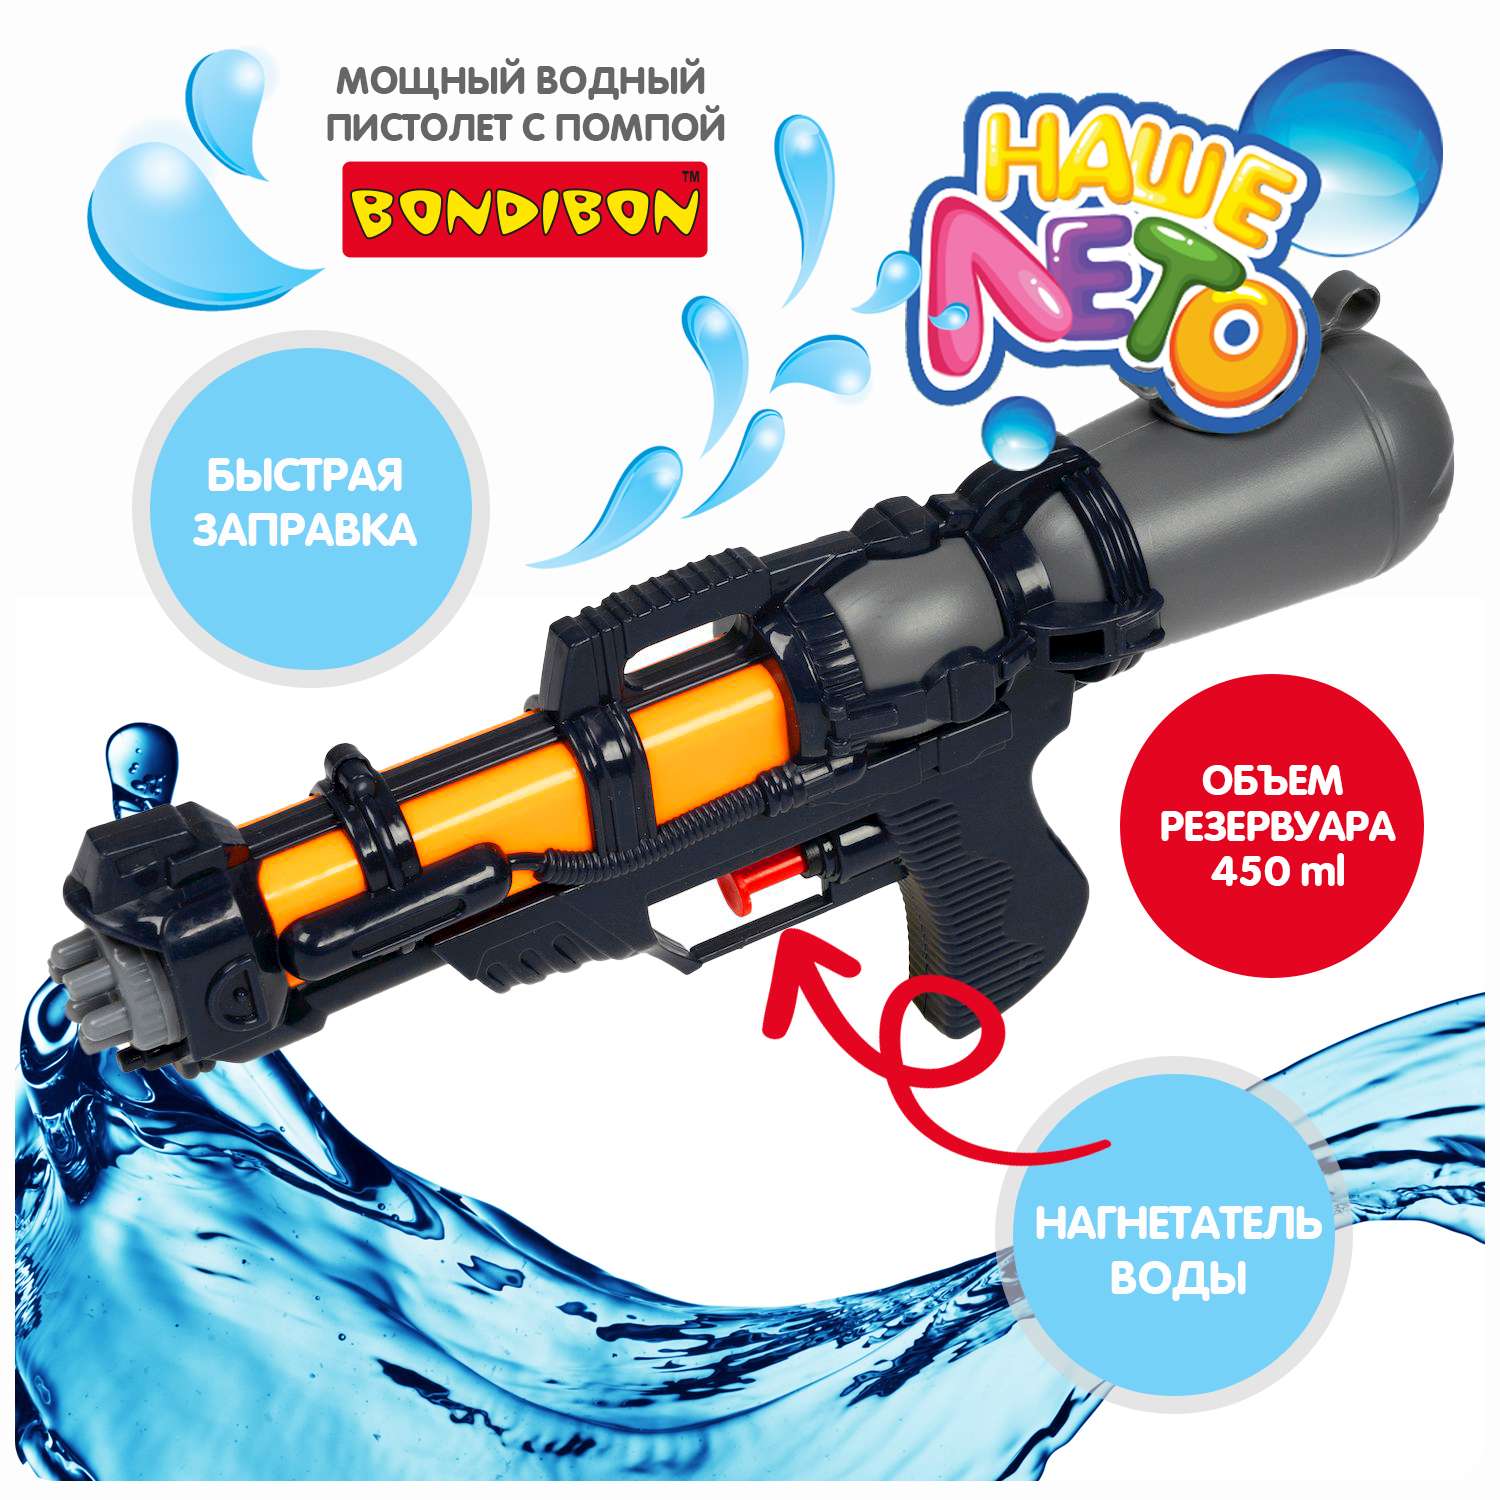 Водный пистолет с помпой BONDIBON серия Наше Лето чёрного цвета - фото 2